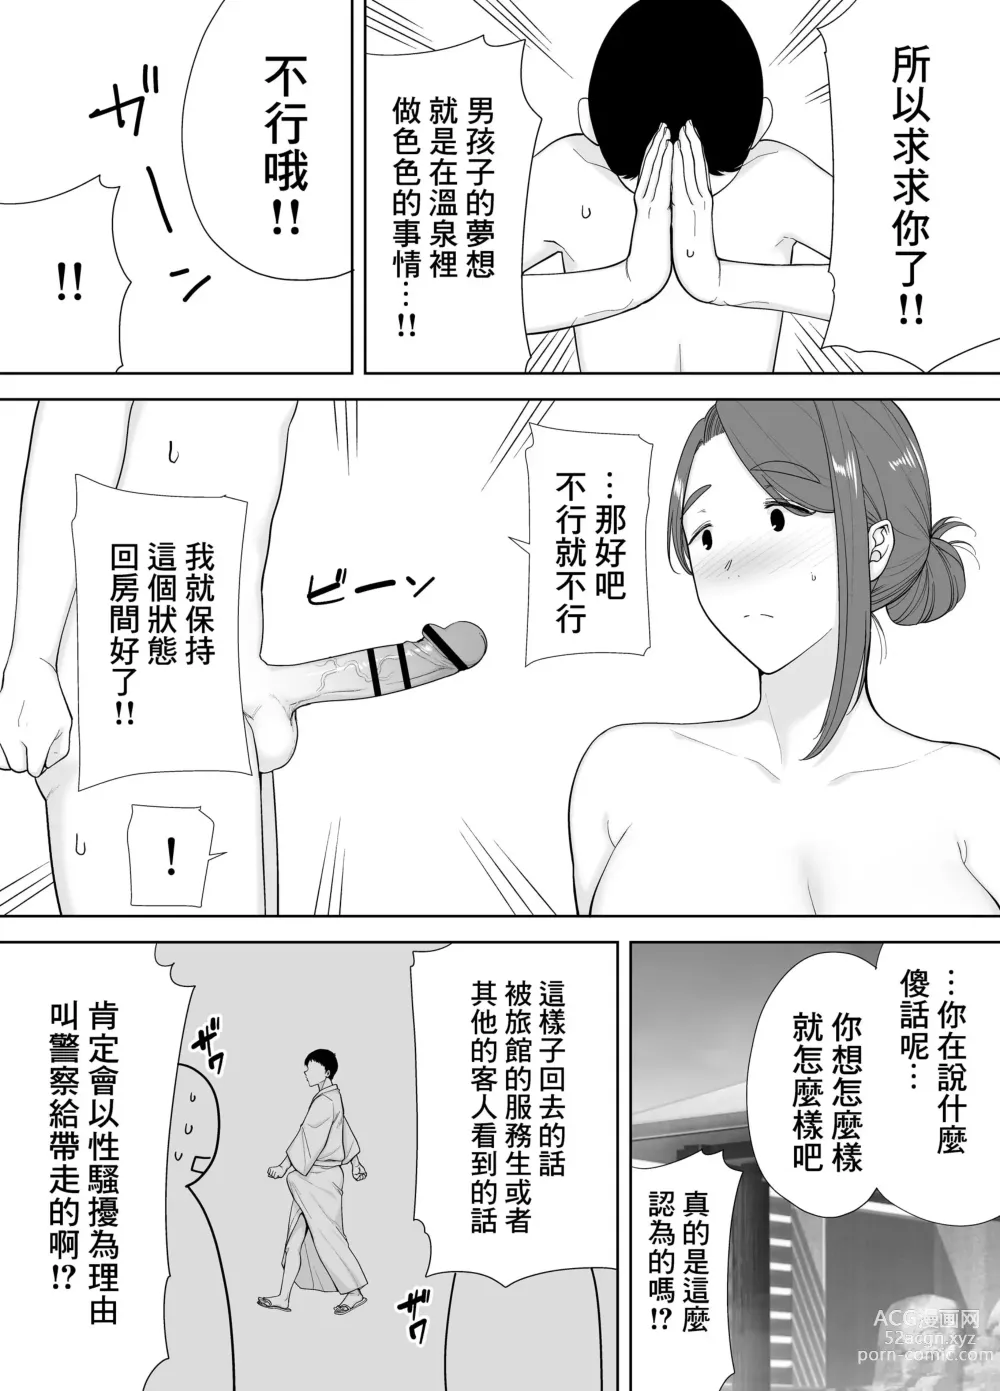 Page 6 of doujinshi 母印堂4